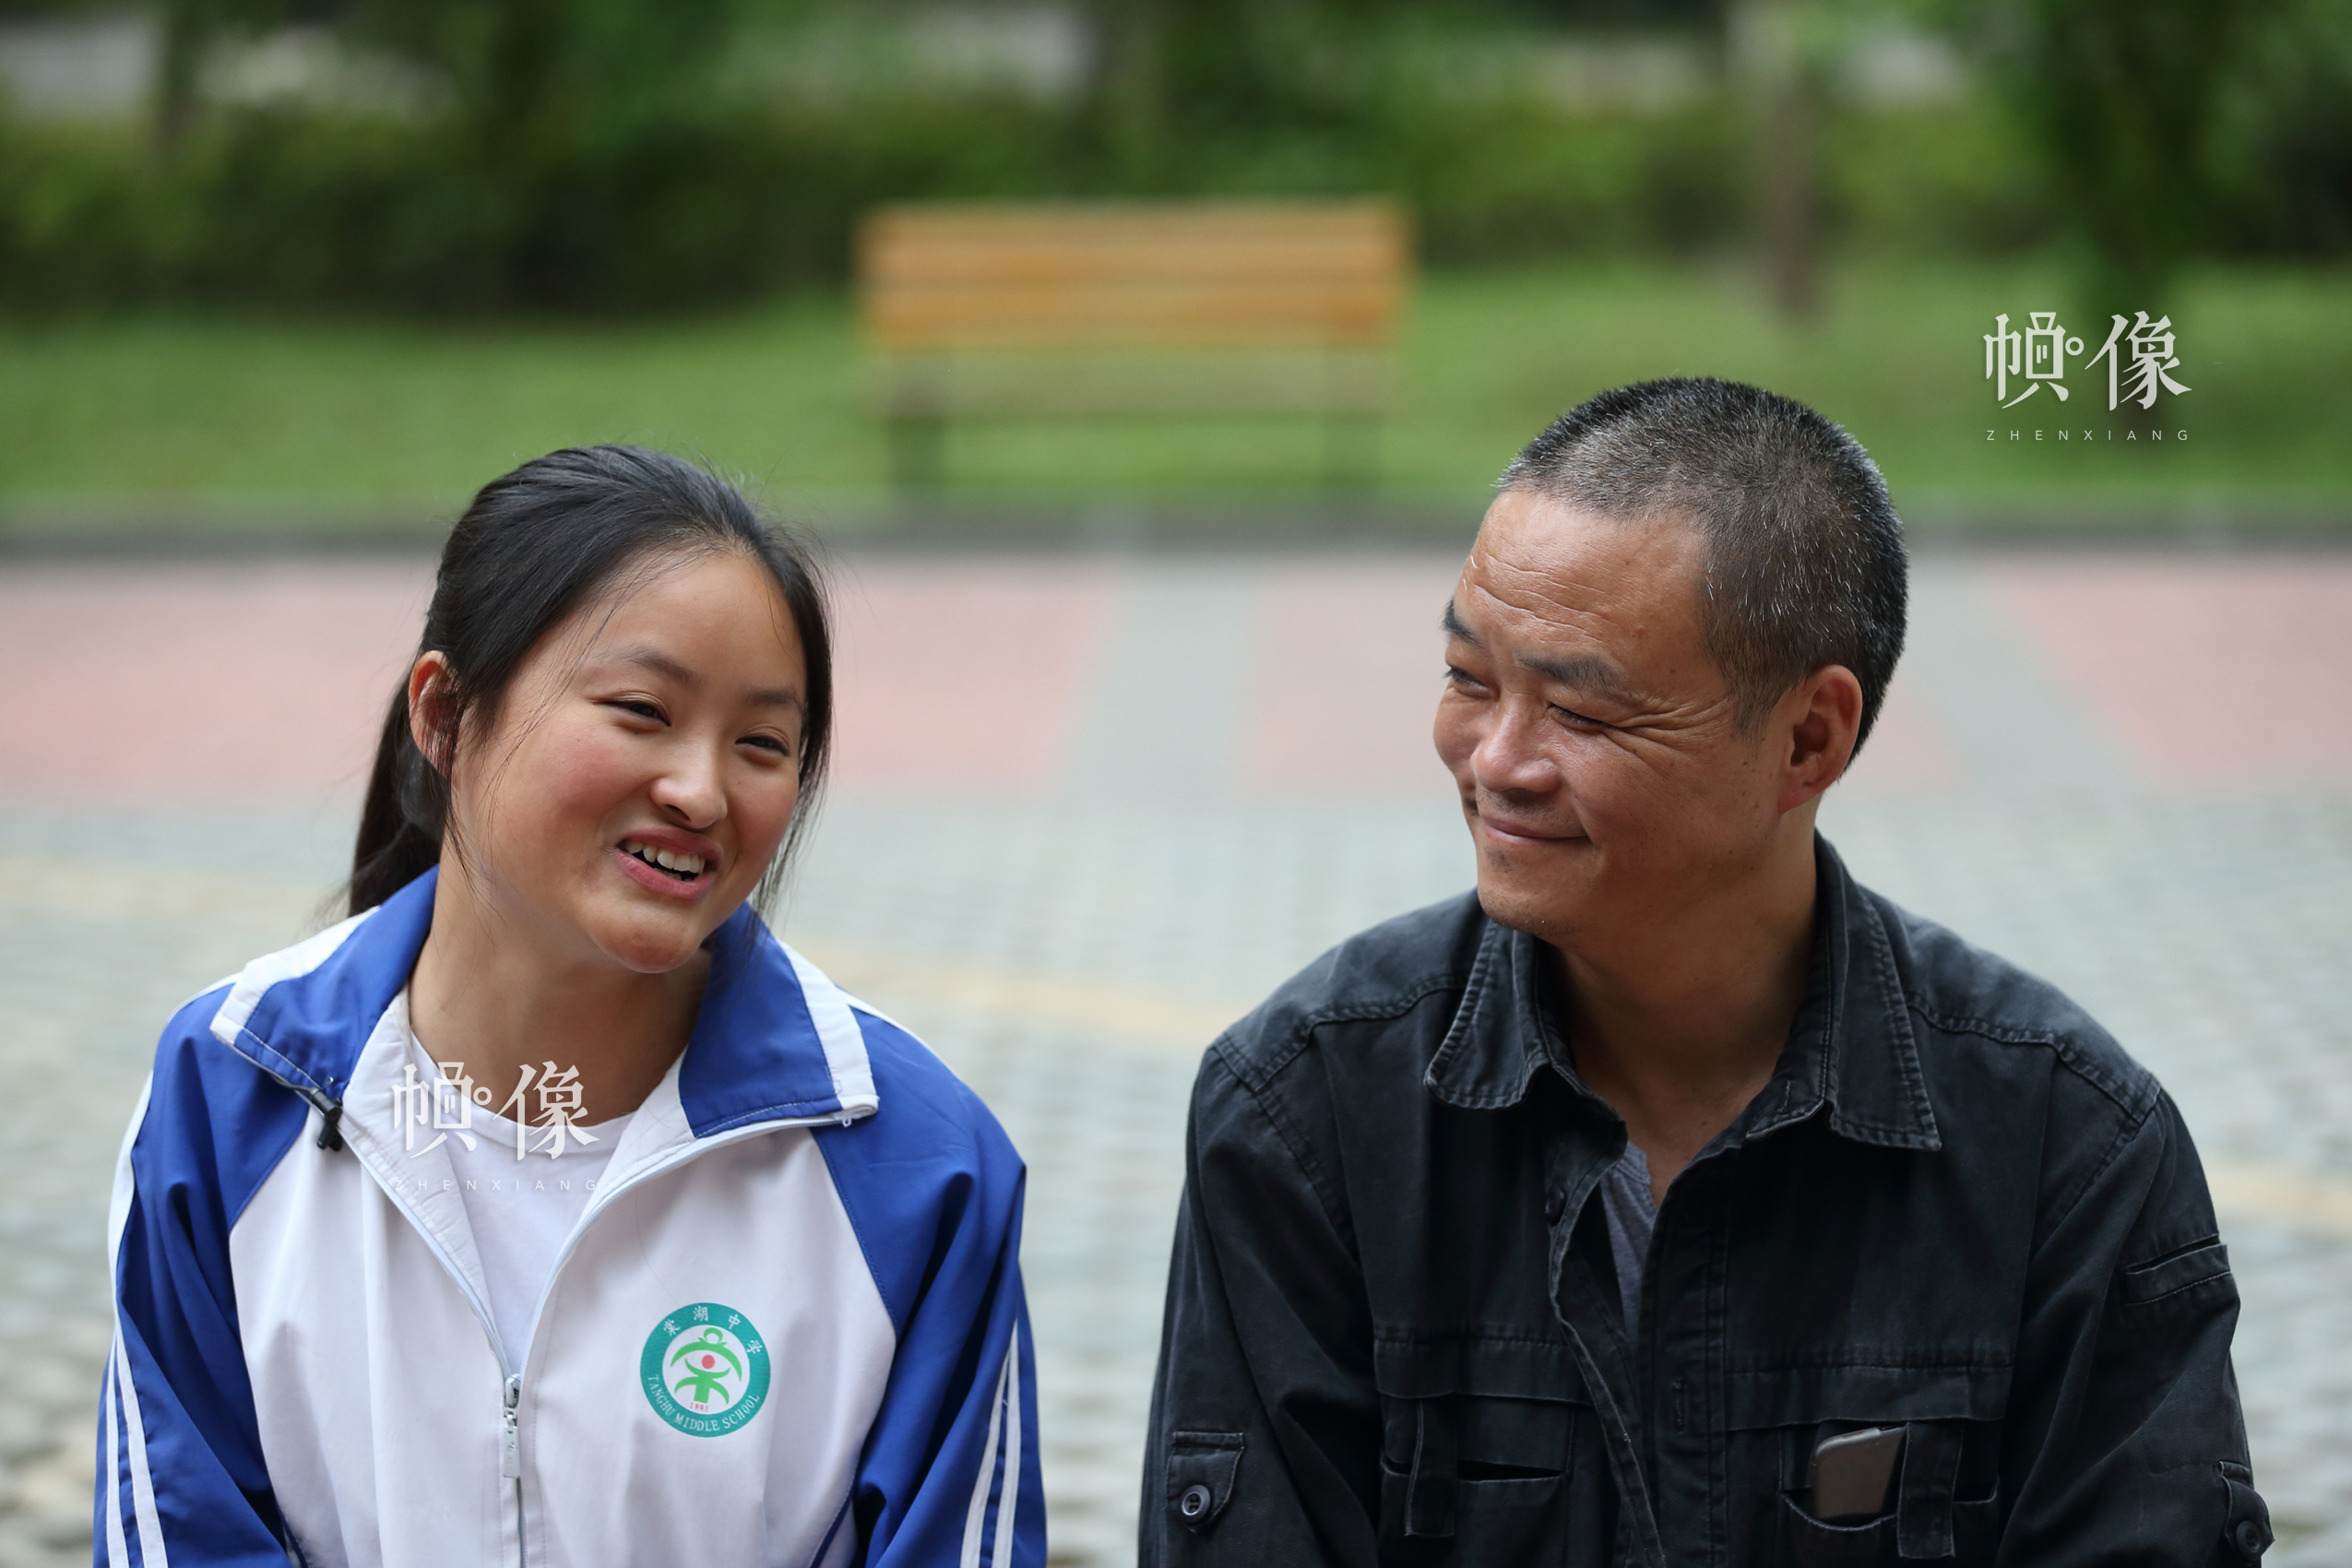 小恒與安康家園園長胡源忠在一起笑著聊天。中國網記者 陳維松 攝